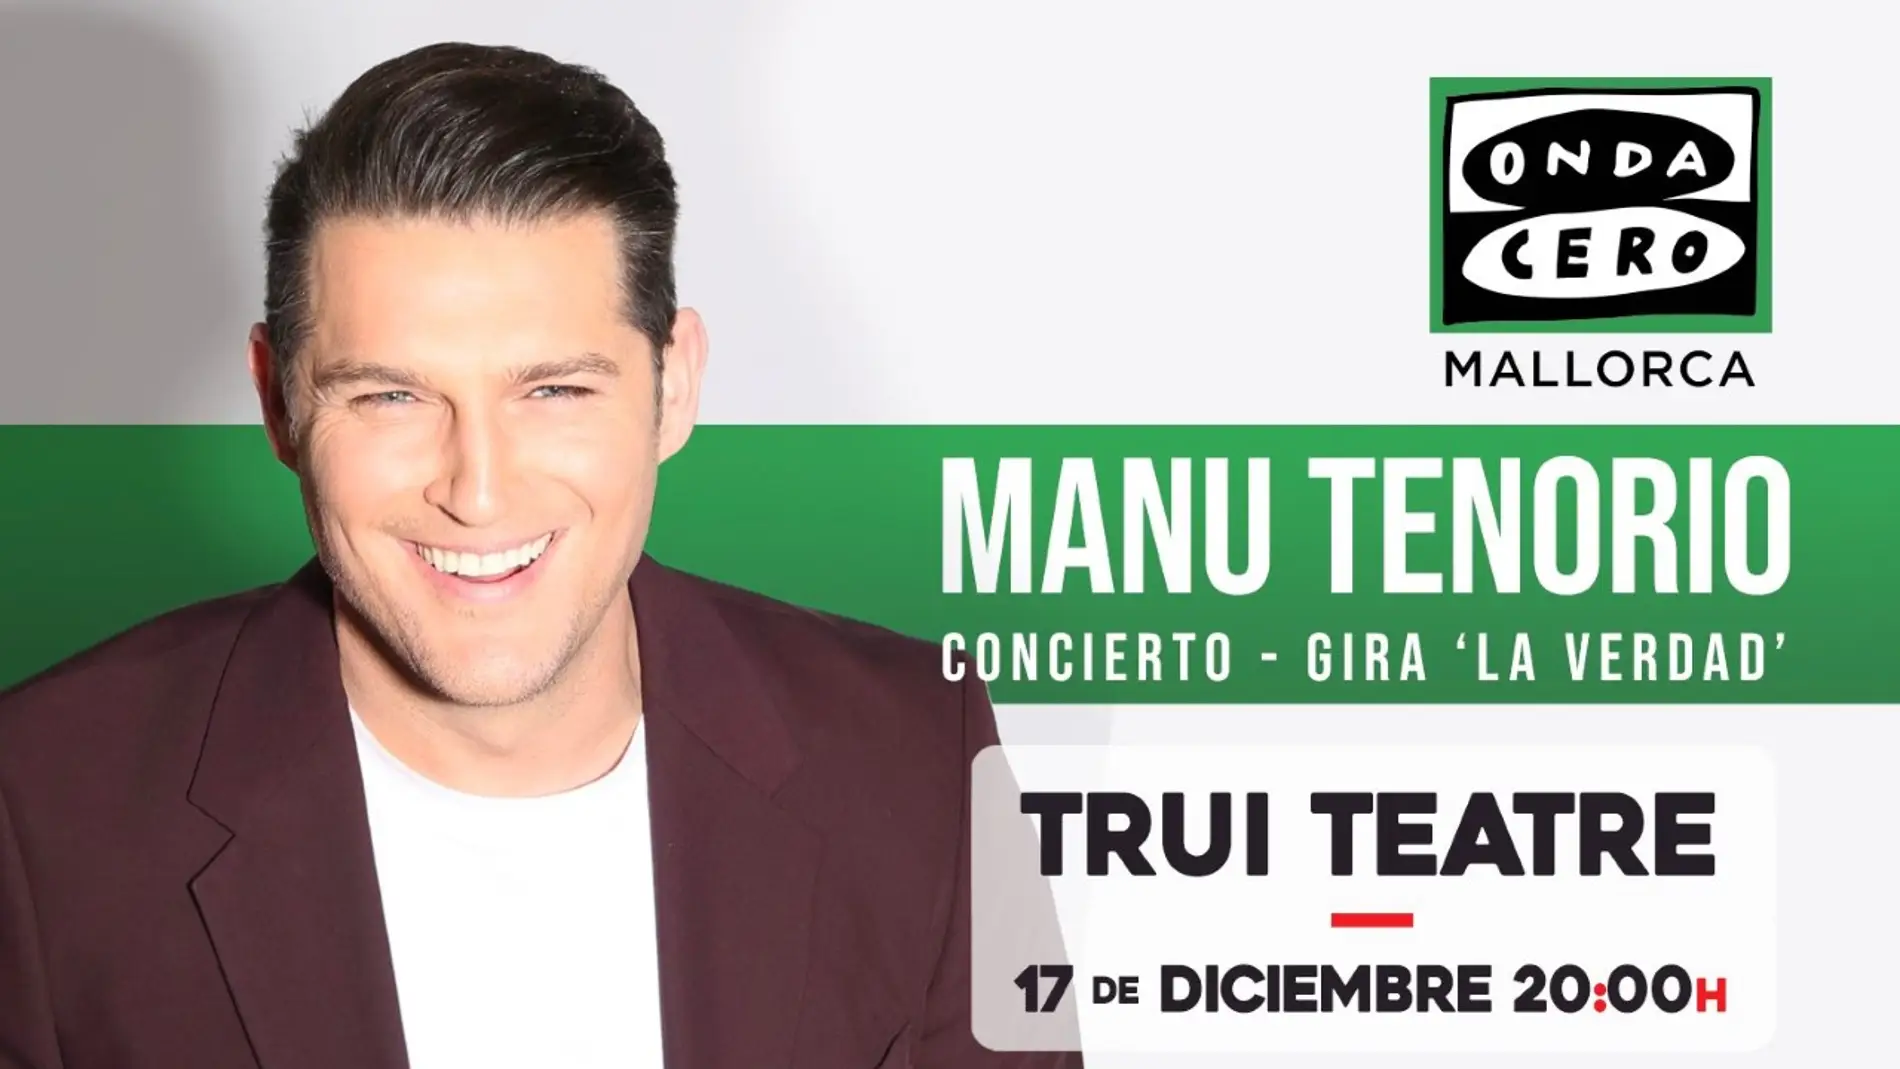  Manu Tenorio cierra con un gran concierto en Mallorca, de la mano de Onda Cero, su gira ‘La verdad’ 